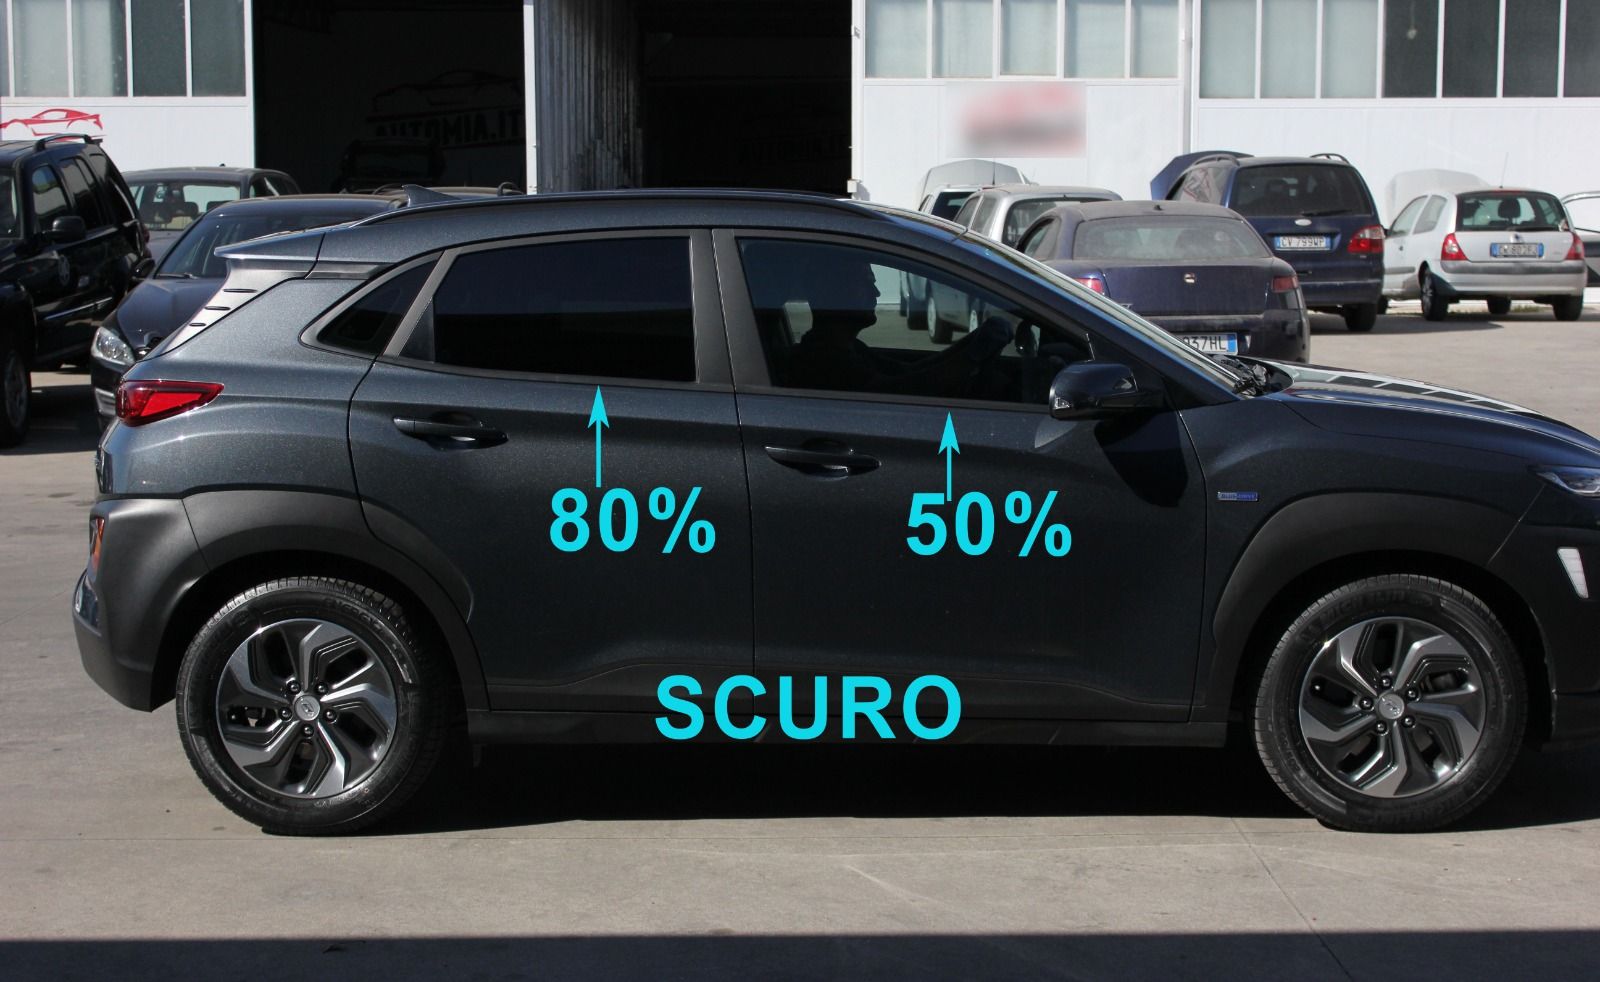 Oscuramento vetri auto con gradazione di scuro in tonalità al 50%